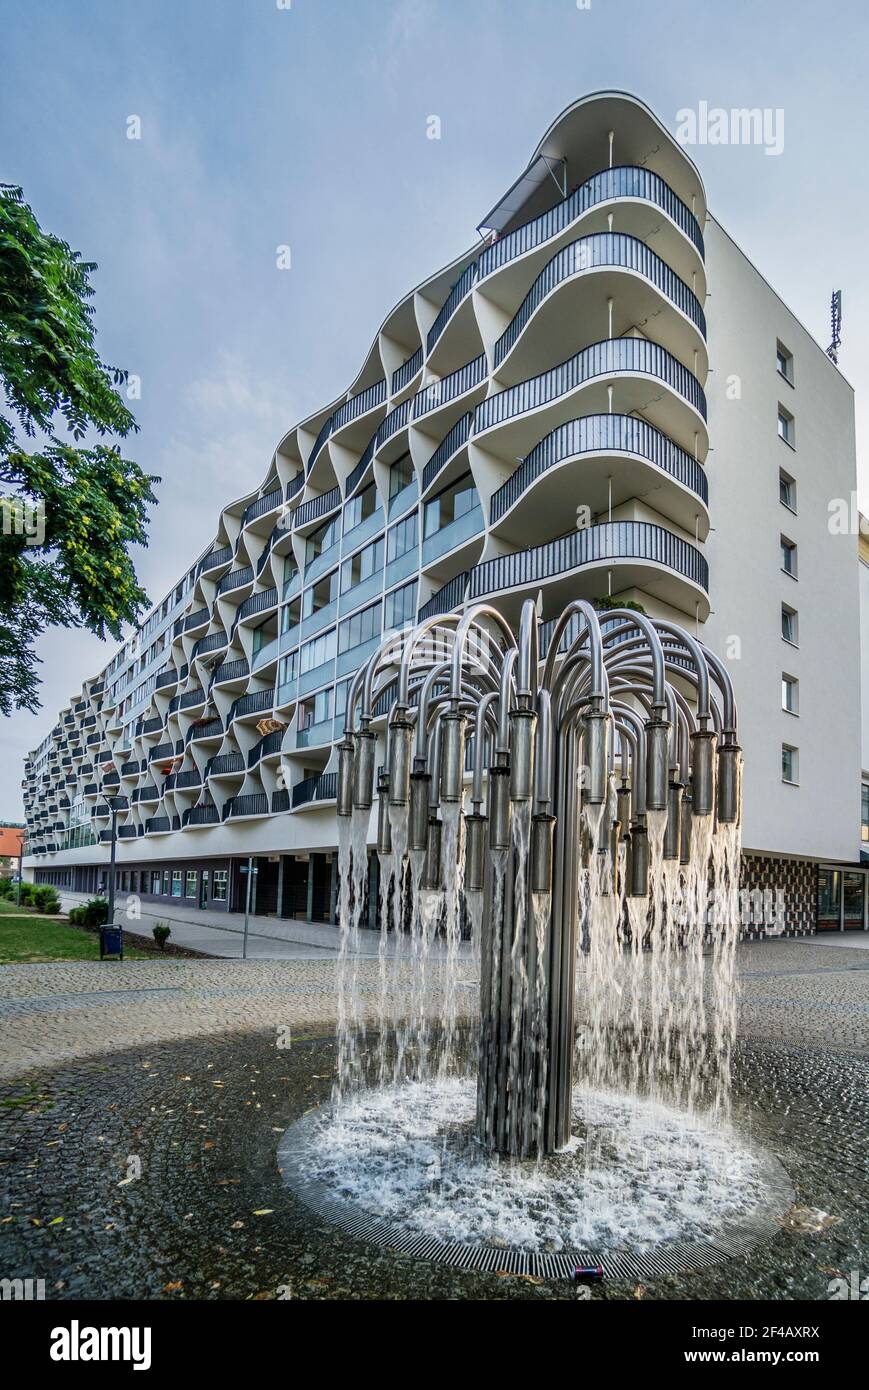 Brunnen an der Wellenfassade eines sanierten ehemaligen DDR-Fertighausgebäudes, Magdeburg, Sachsen-Anhalt, Deutschland Stockfoto